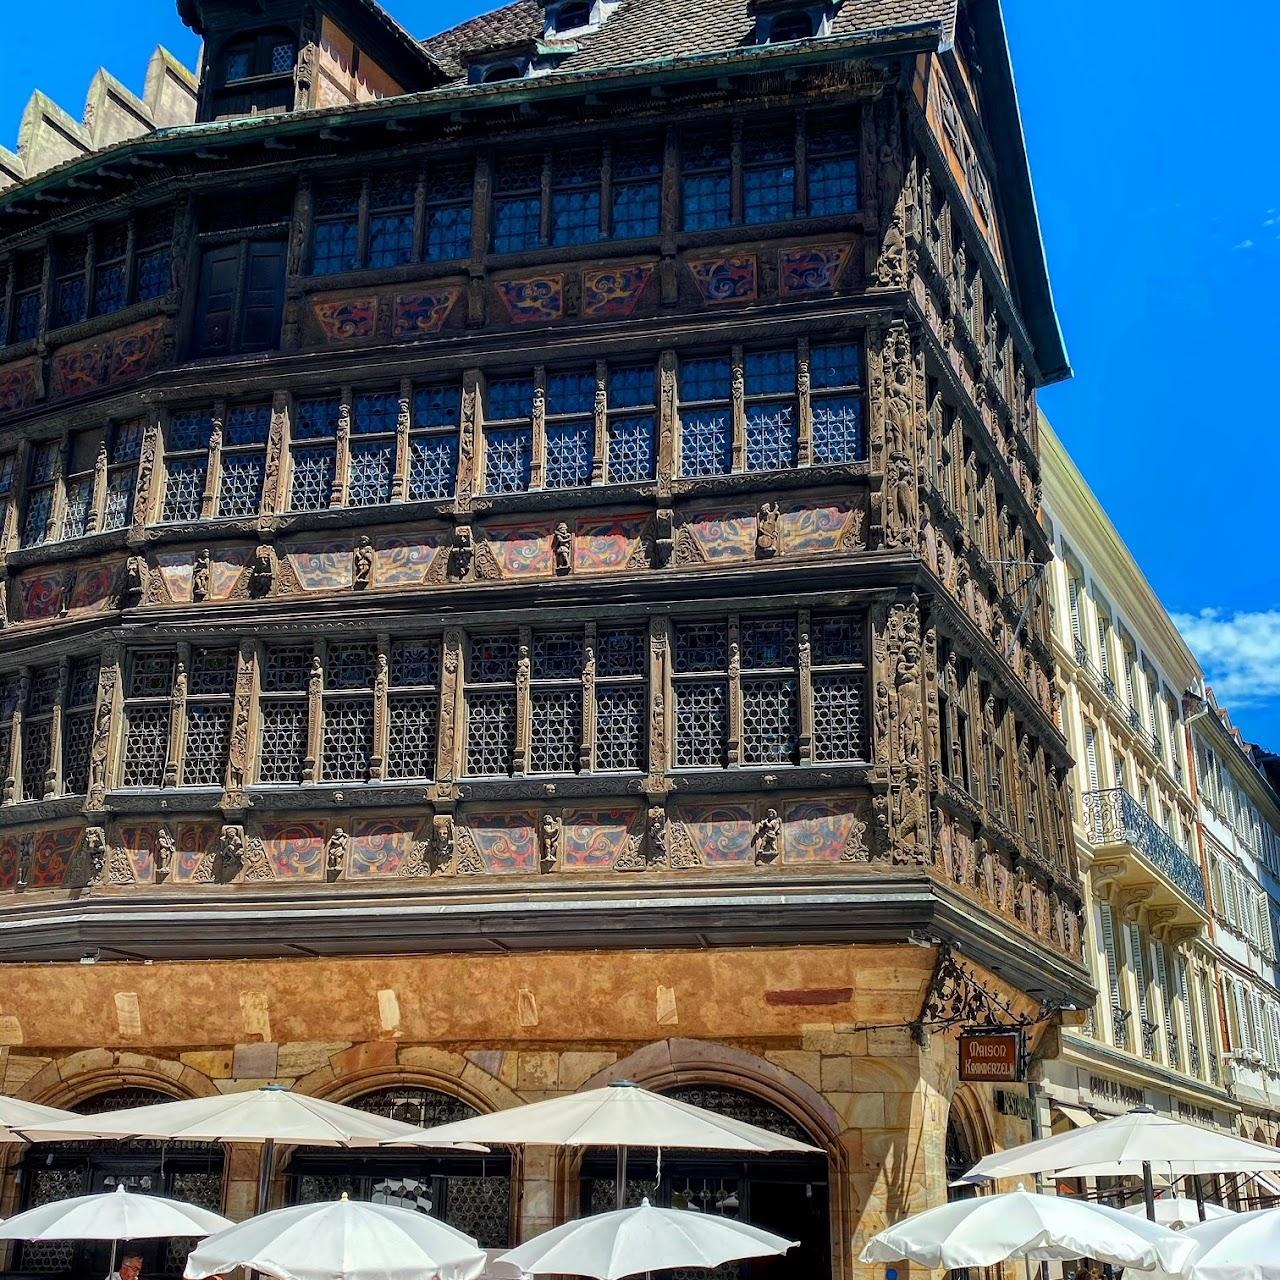 Restaurant "Haus Kammerzell" in Strasbourg